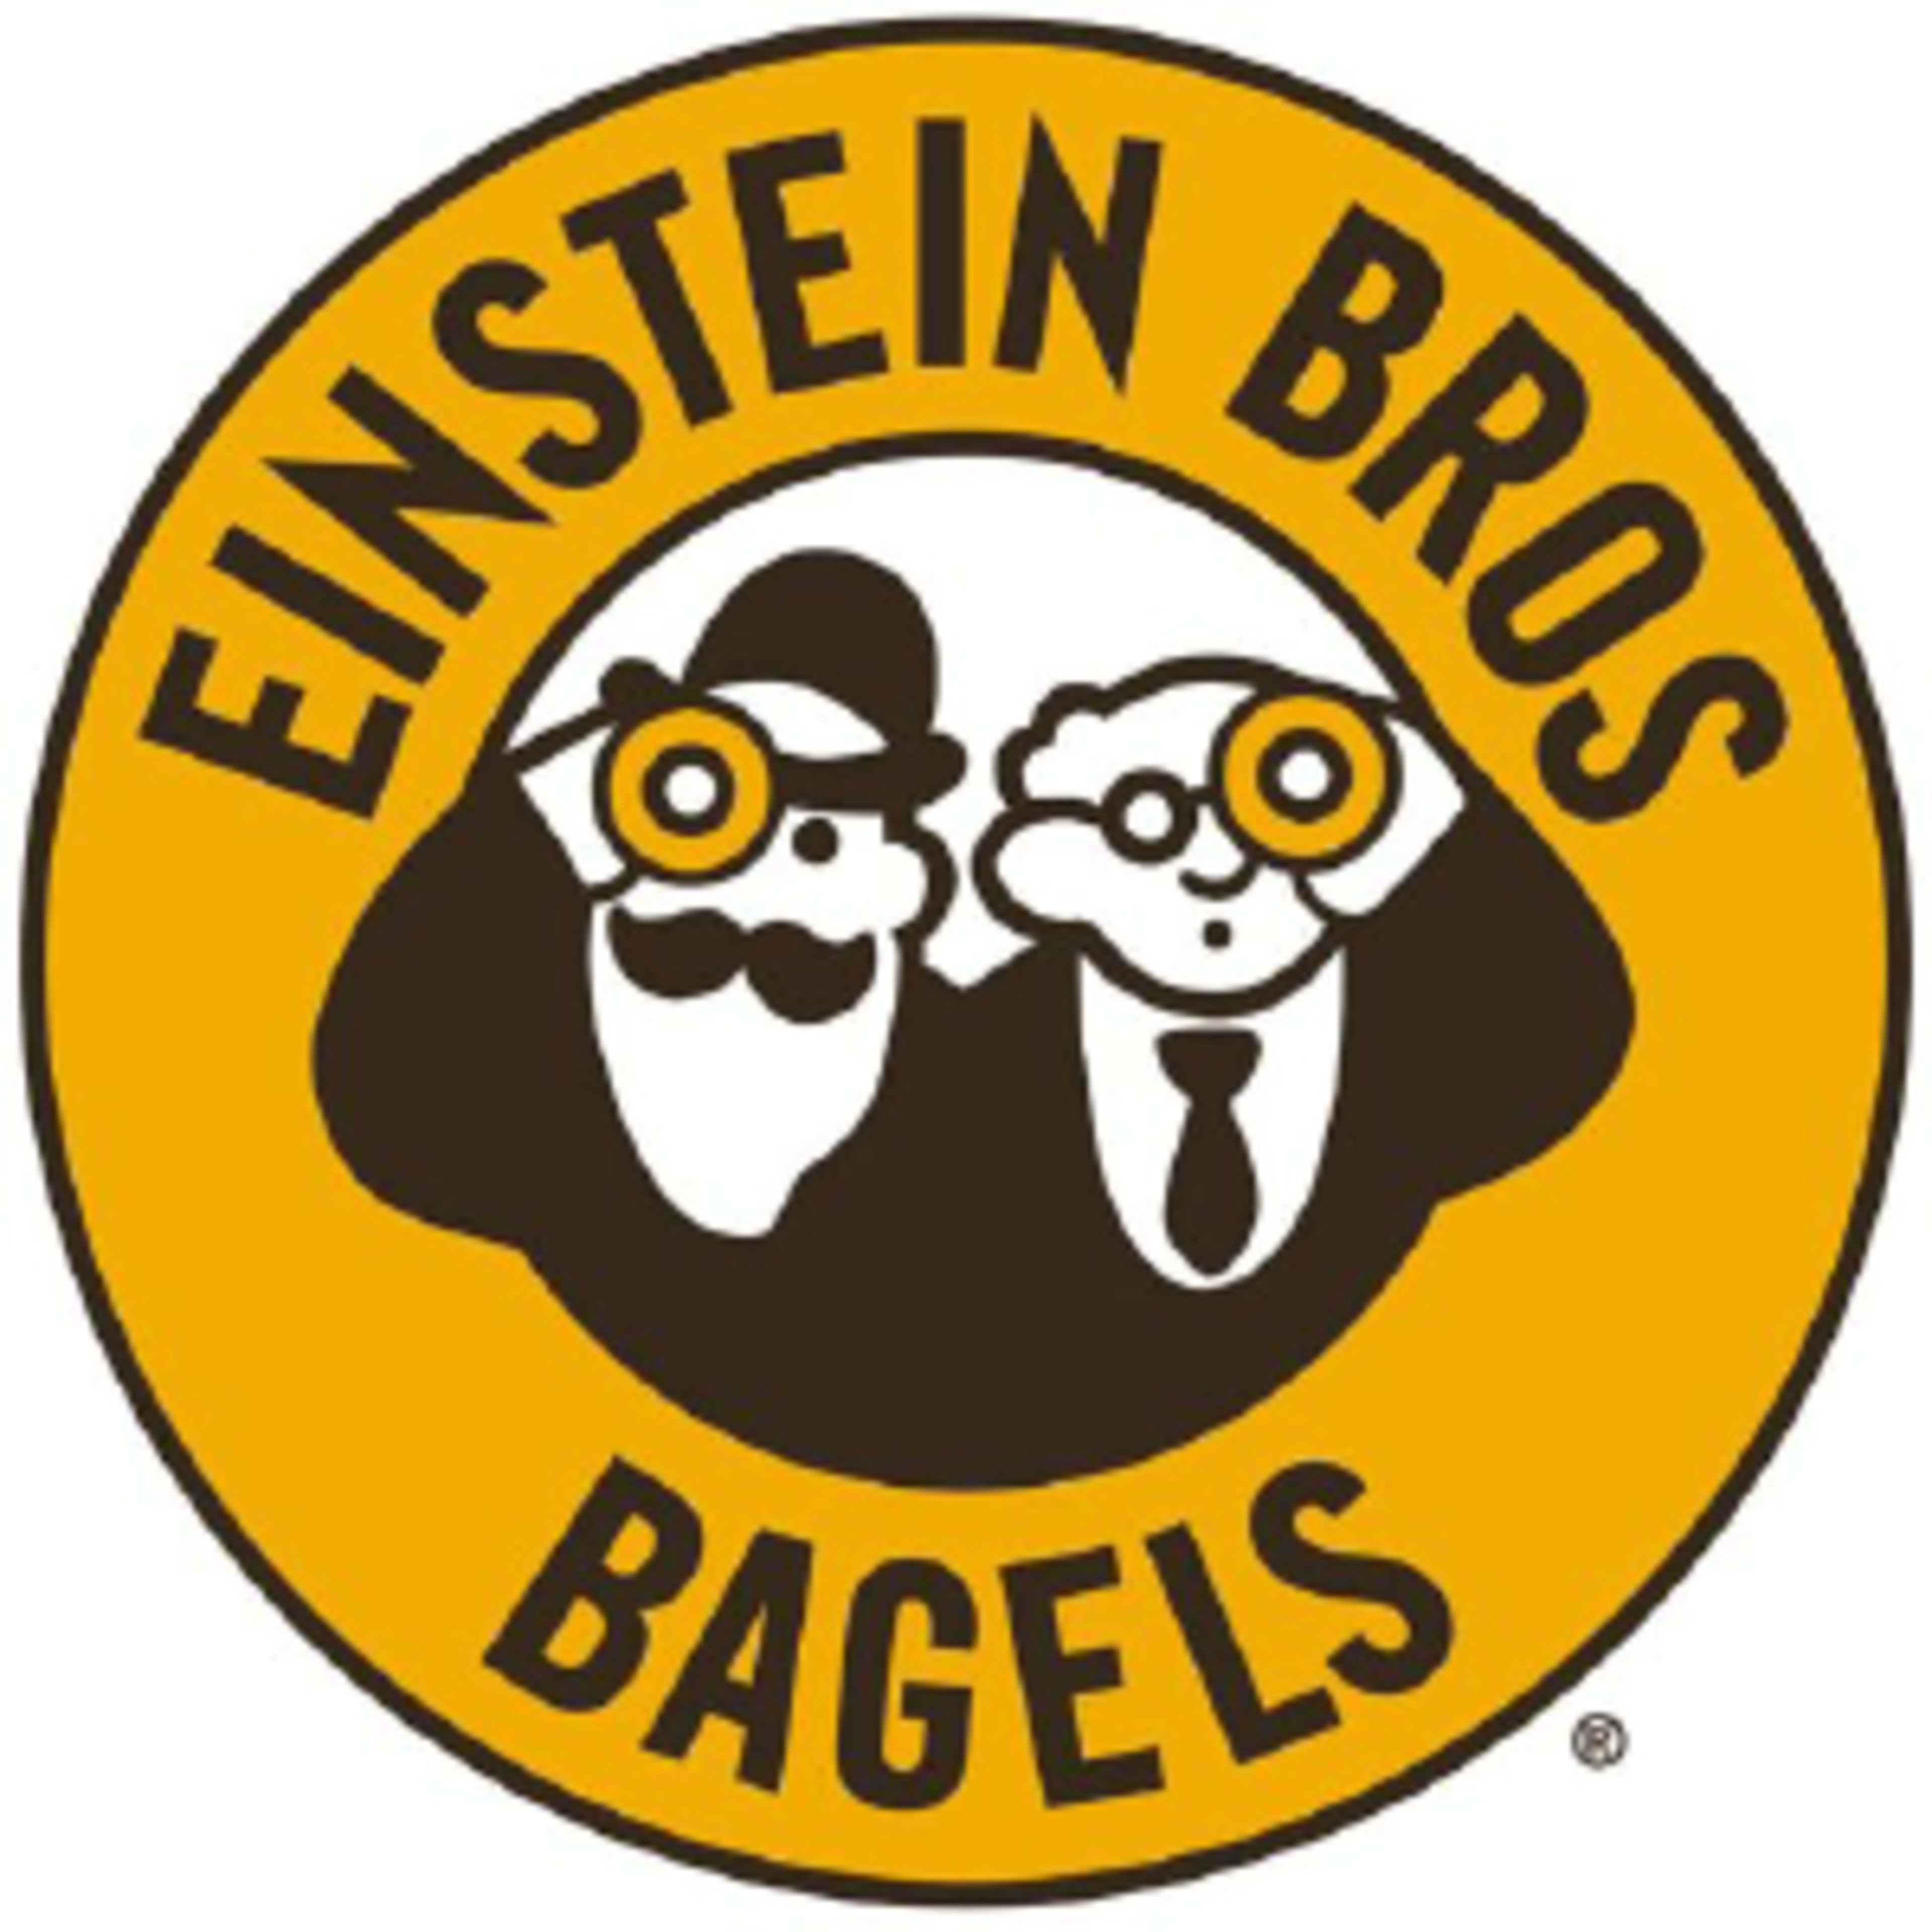 Einstein Bros. BagelsCode